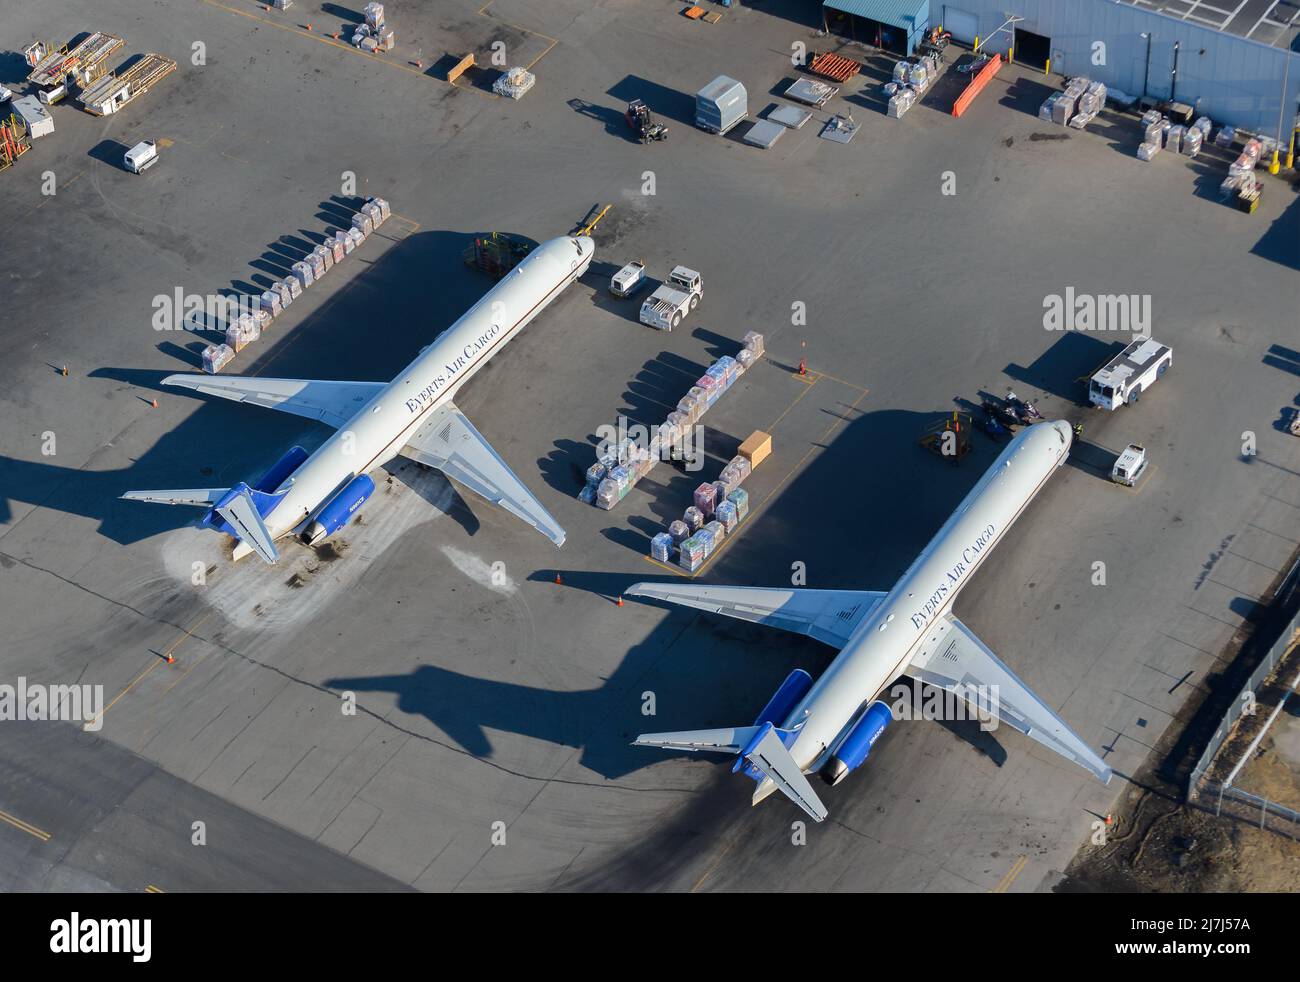 Everts Air Cargo zwei MD-80-Flugzeuge von McDonnell Douglas. Frachttransport durch Everts Cargo MD-83 und MD-82, auch MD-83F und MD-82F genannt. Stockfoto